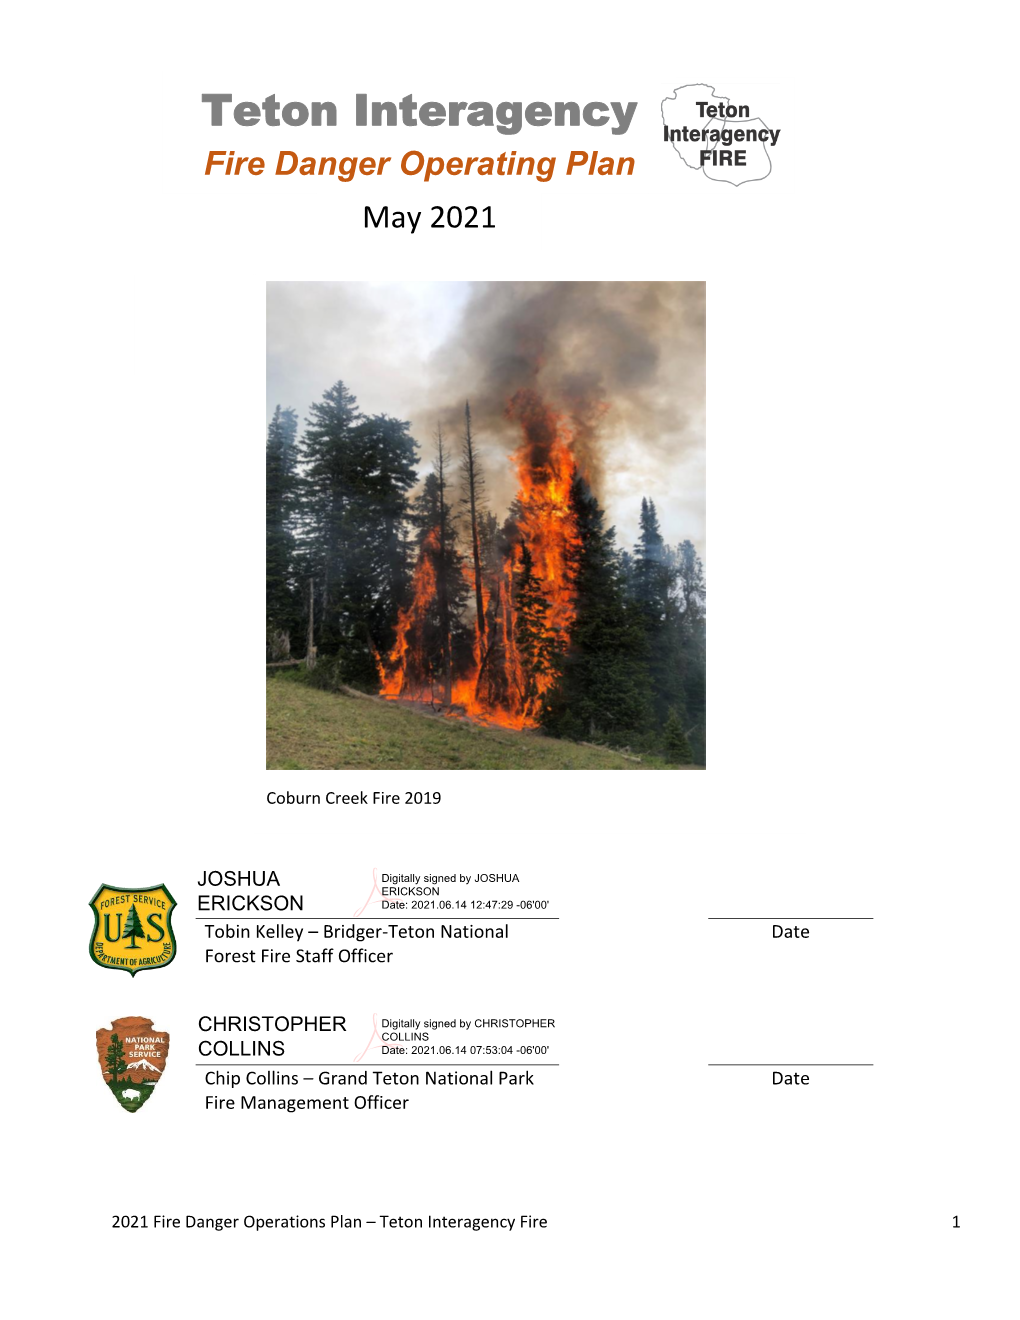 Teton Interagency Fire Danger Operating Plan